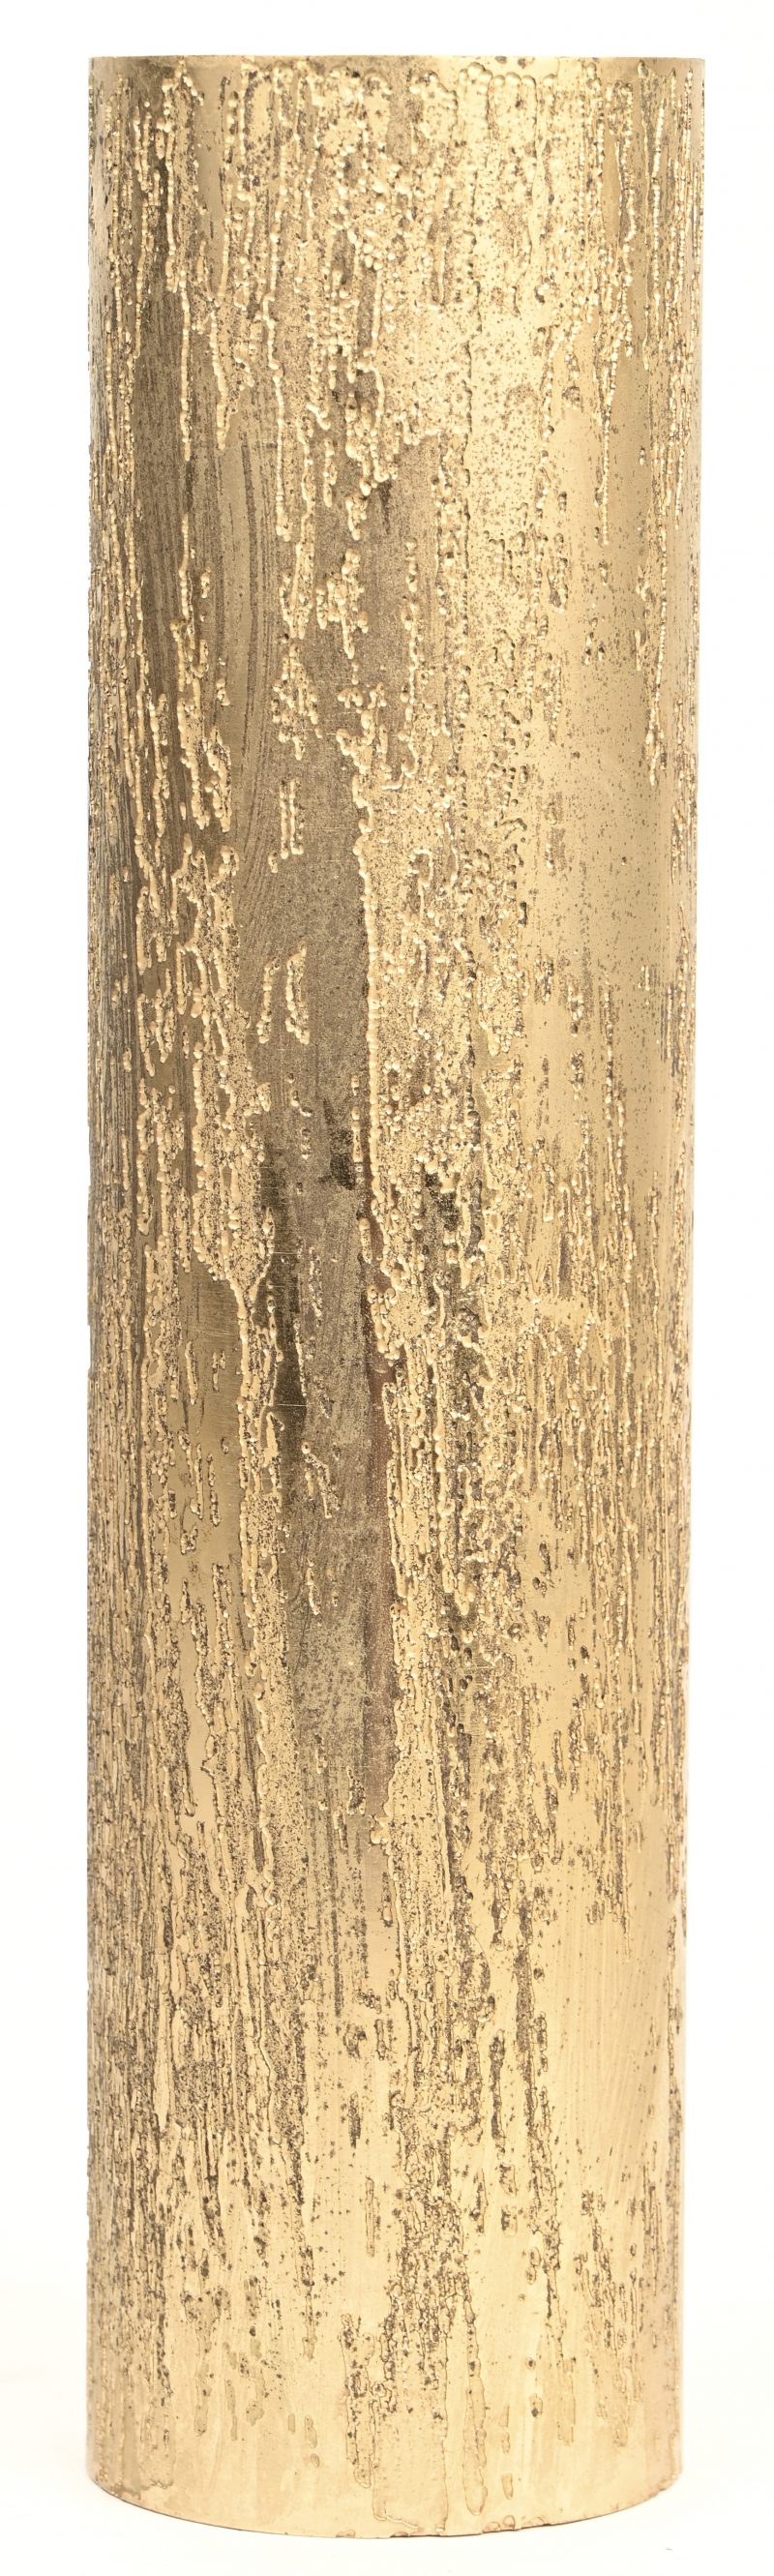 Een metalen cilindervaasje, verguld met organisch detail in het reliëf. Onderaan gemerkt.